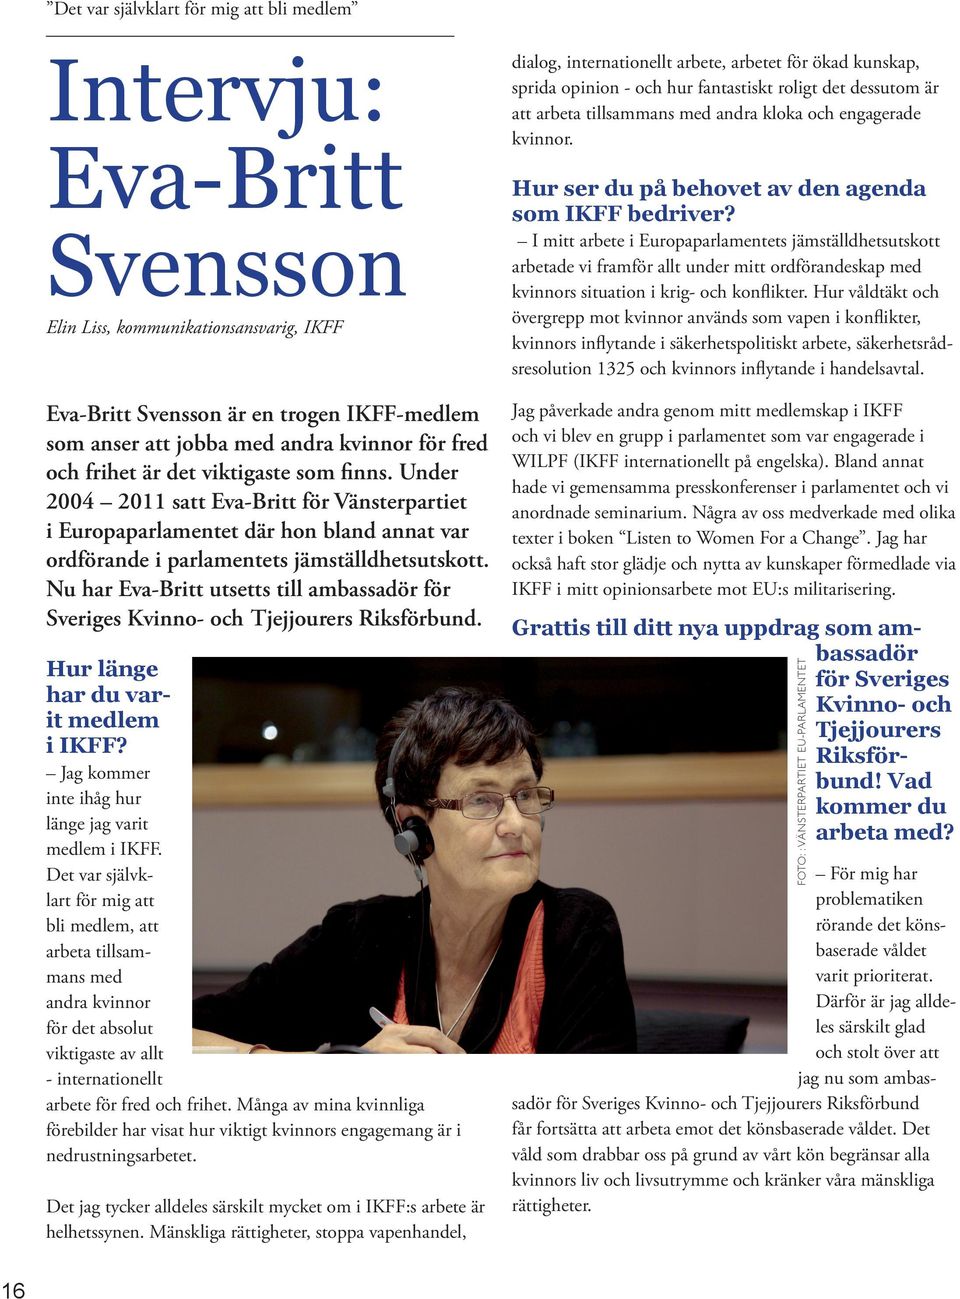 Nu har Eva-Britt utsetts till ambassadör för Sveriges Kvinno- och Tjejjourers Riksförbund. Hur länge har du varit medlem i IKFF? Jag kommer inte ihåg hur länge jag varit medlem i IKFF.